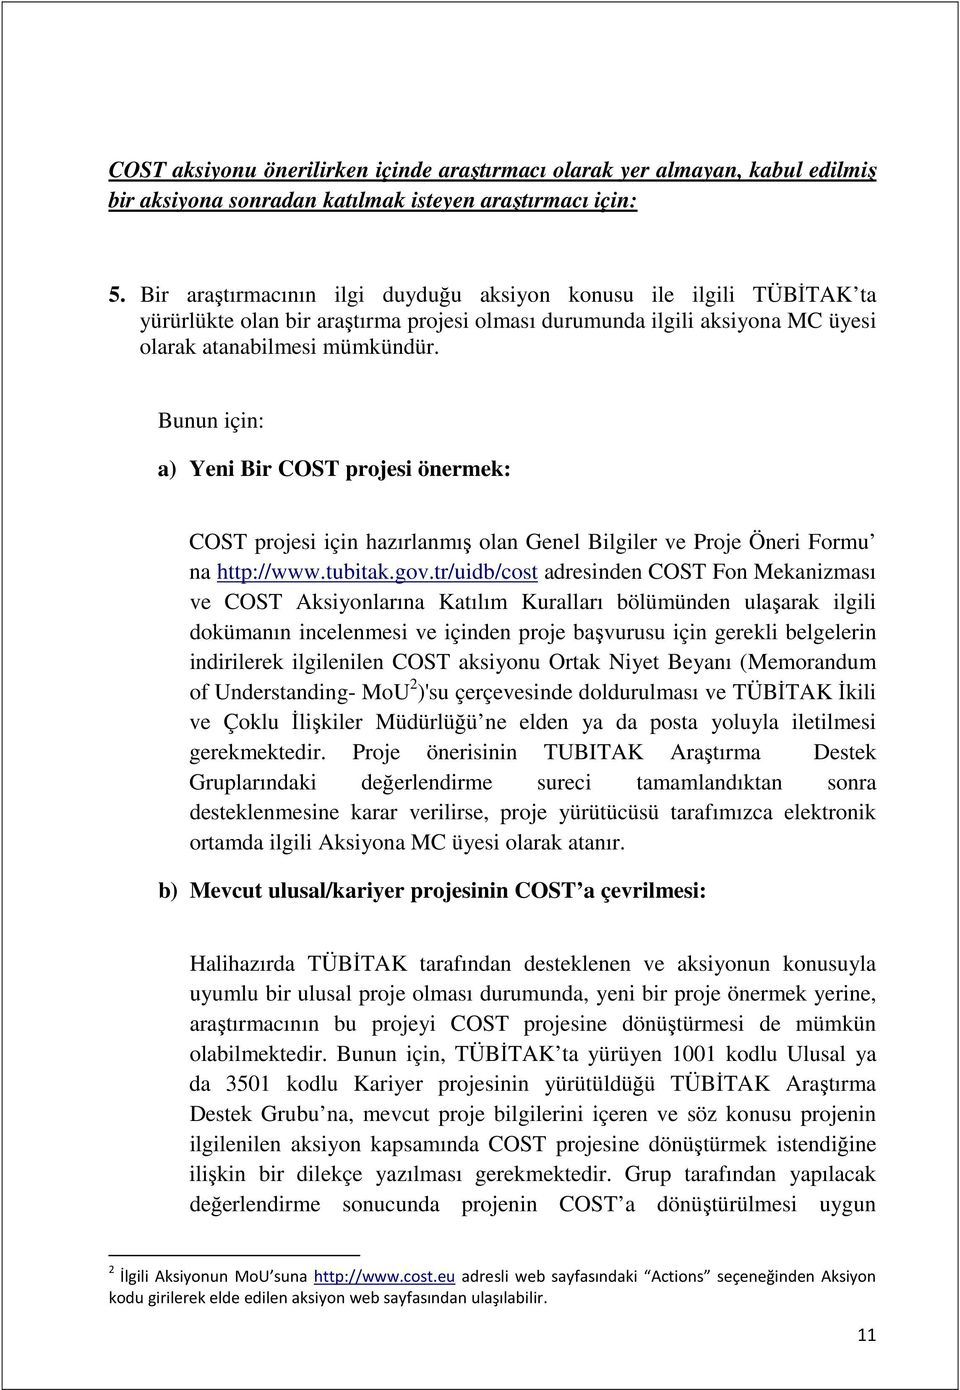 Bunun için: a) Yeni Bir COST projesi önermek: COST projesi için hazırlanmış olan Genel Bilgiler ve Proje Öneri Formu na http://www.tubitak.gov.